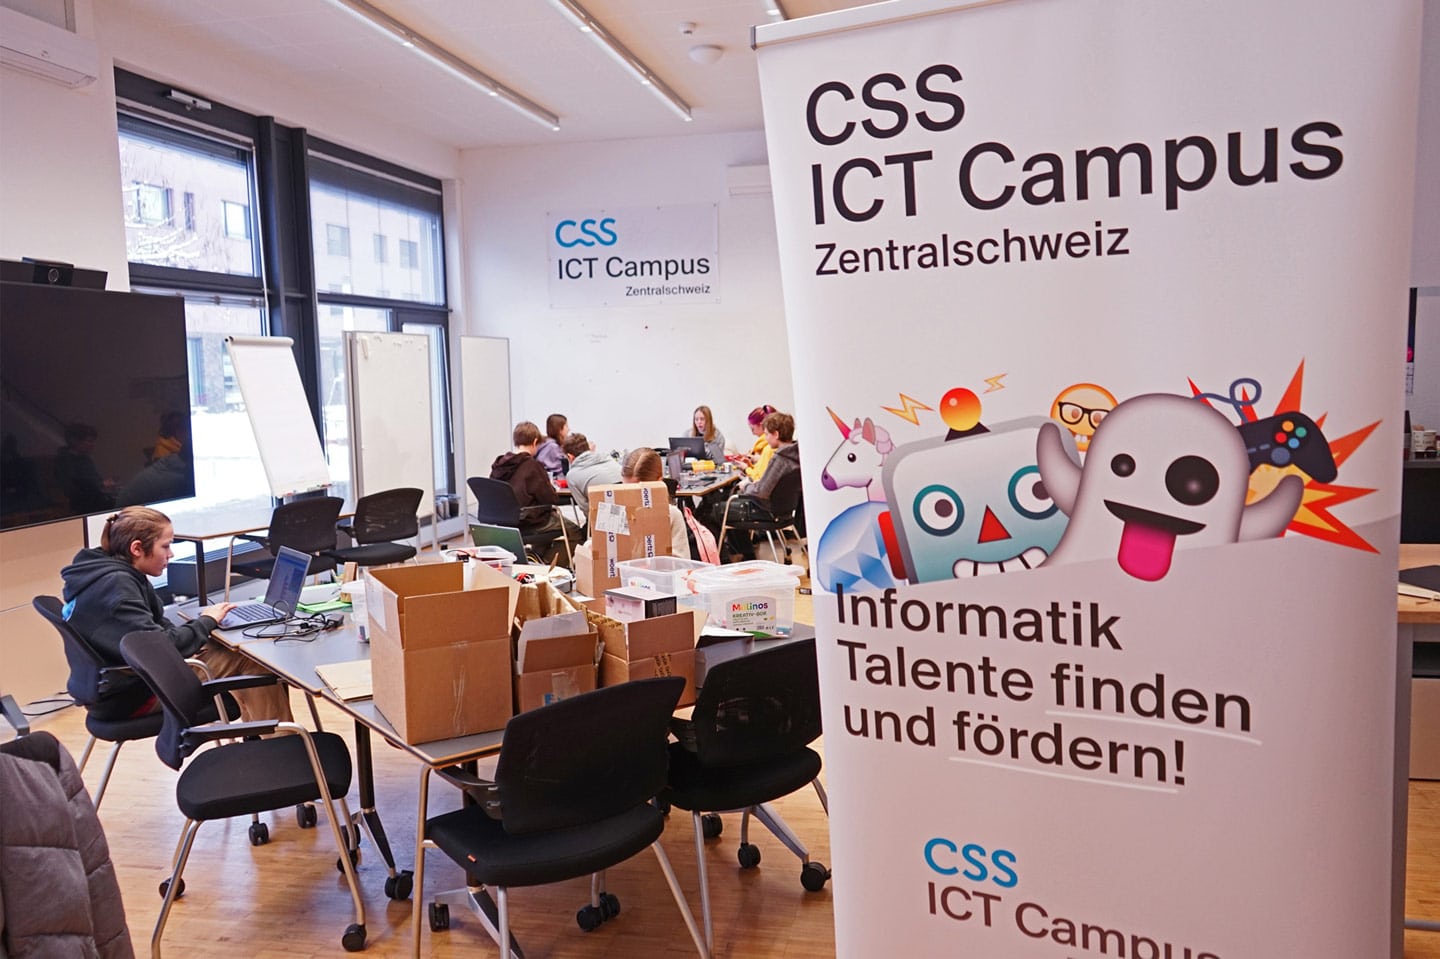 L’ICT Campus de Suisse centrale dans les locaux de la CSS.